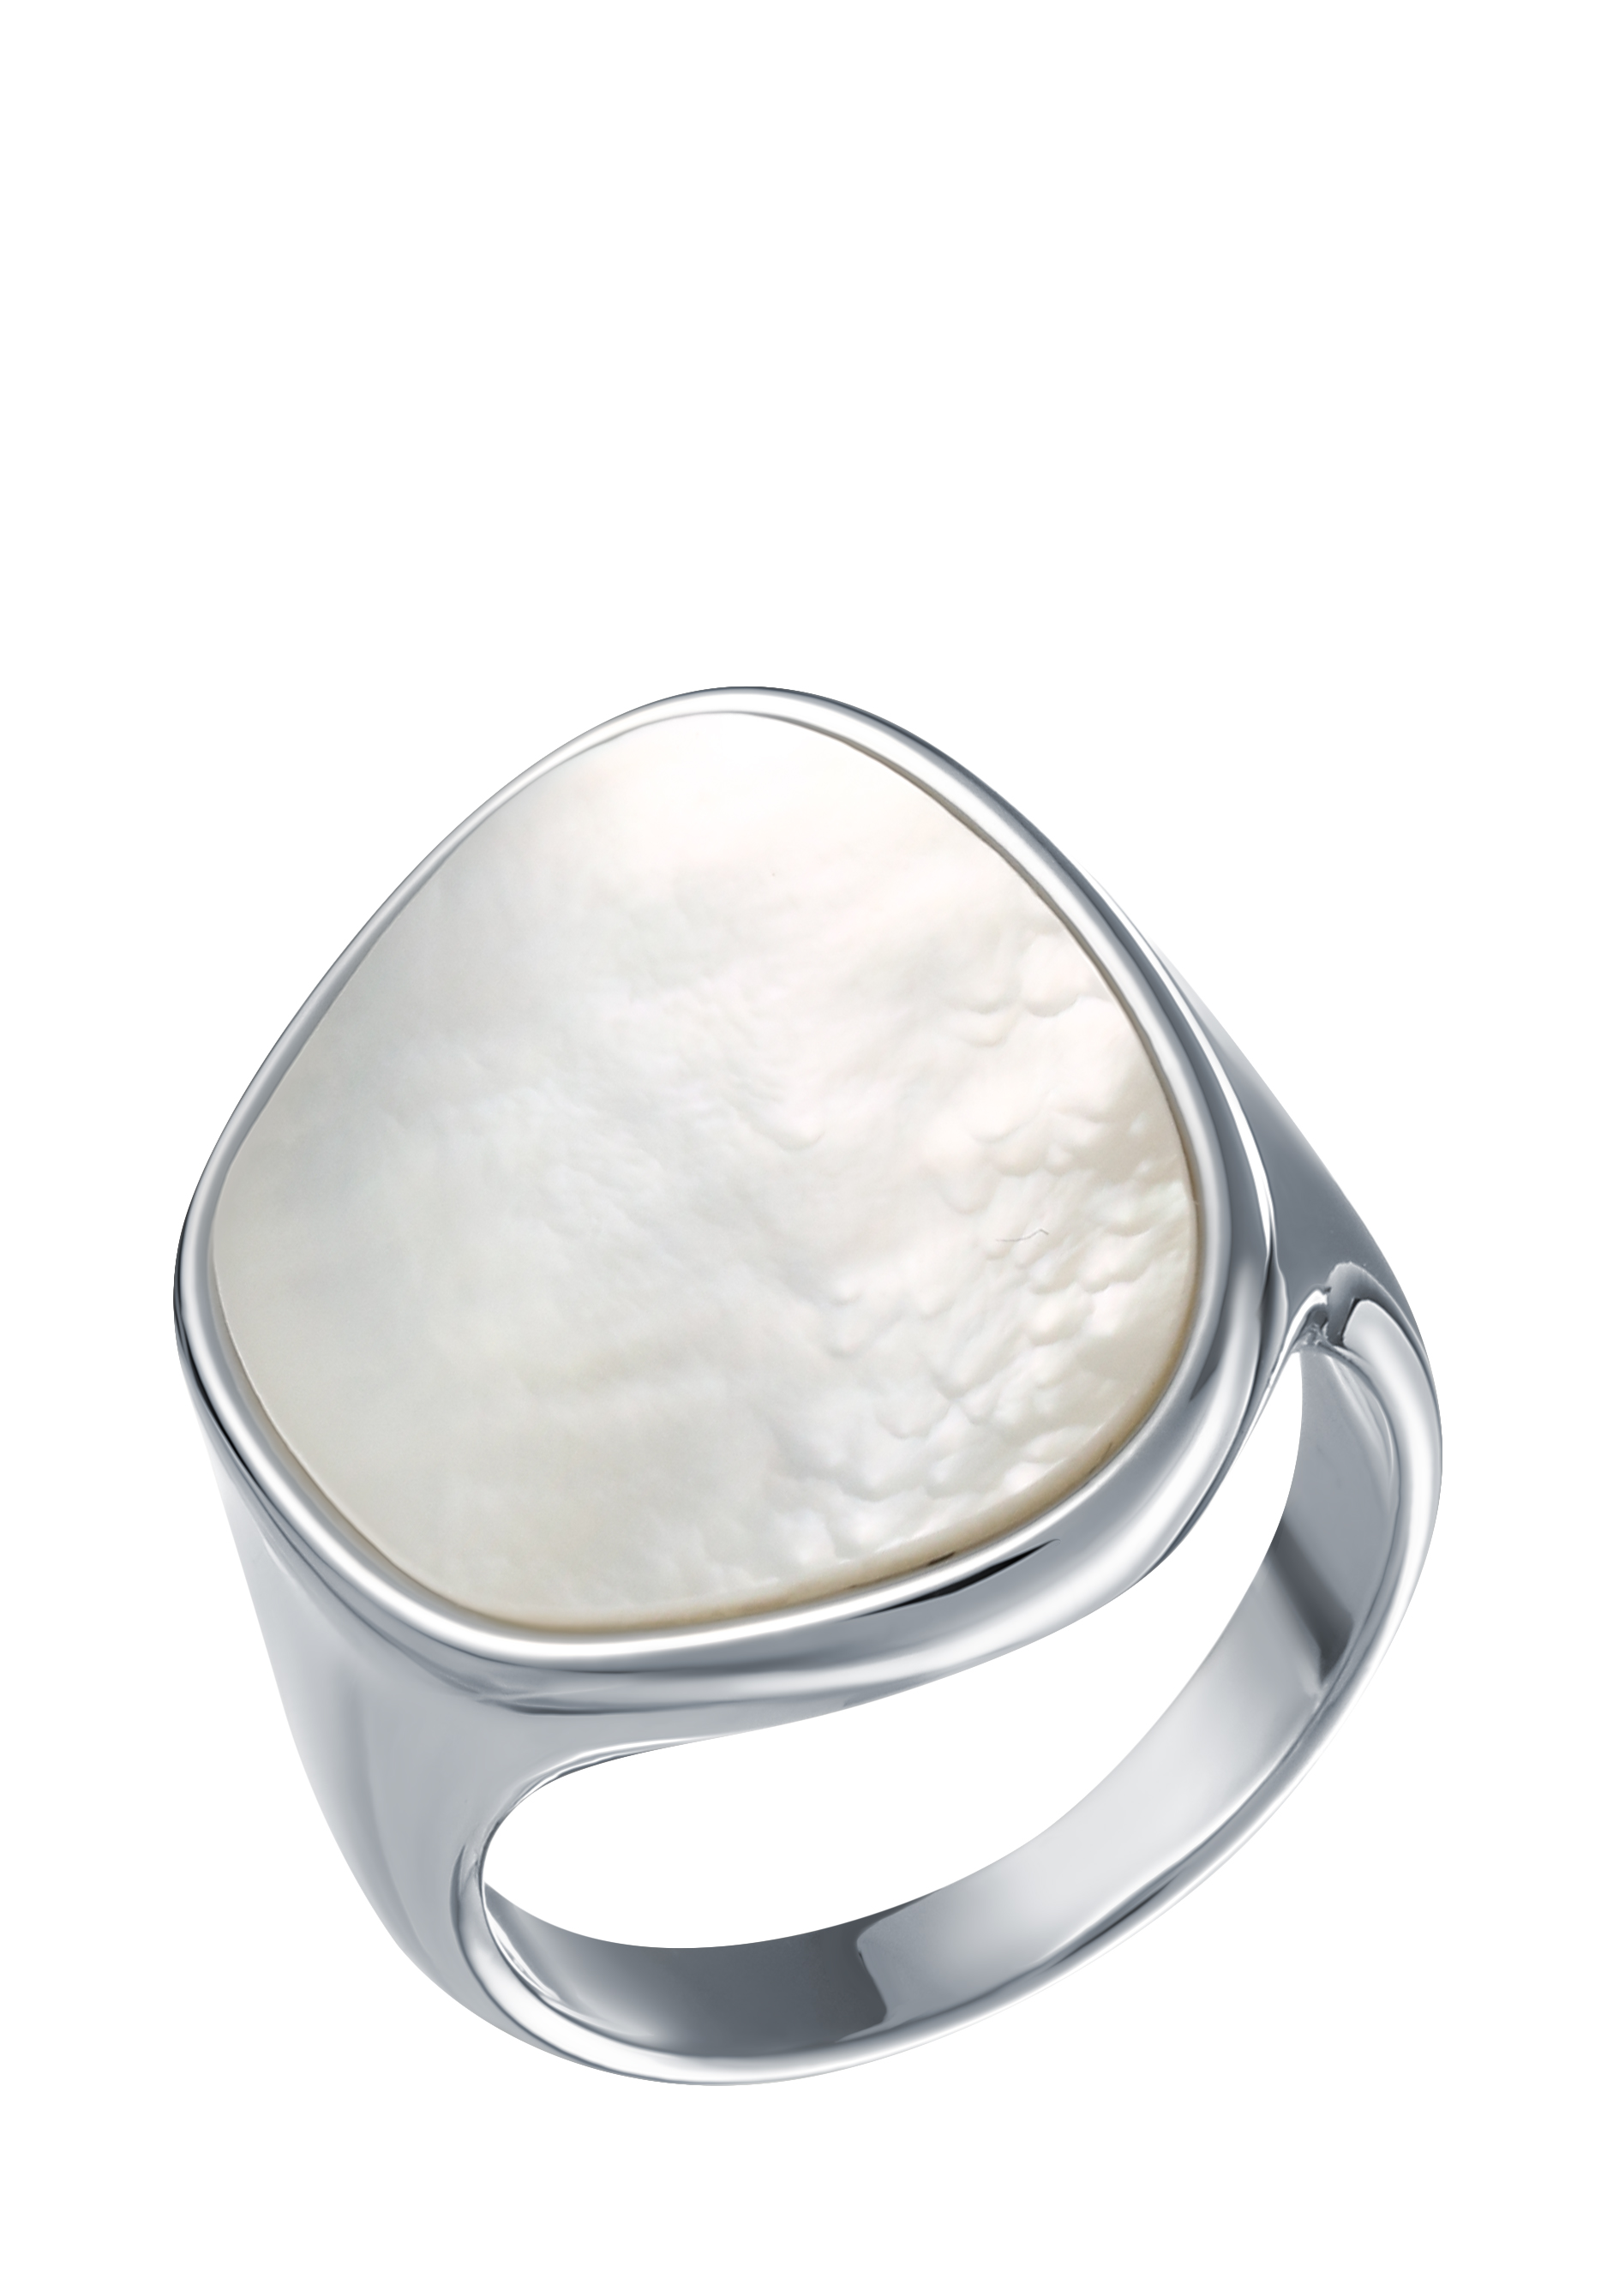 Кольцо "Перламутровая дымка" VGOLDIUM, цвет белый, размер 17 перстень - фото 1